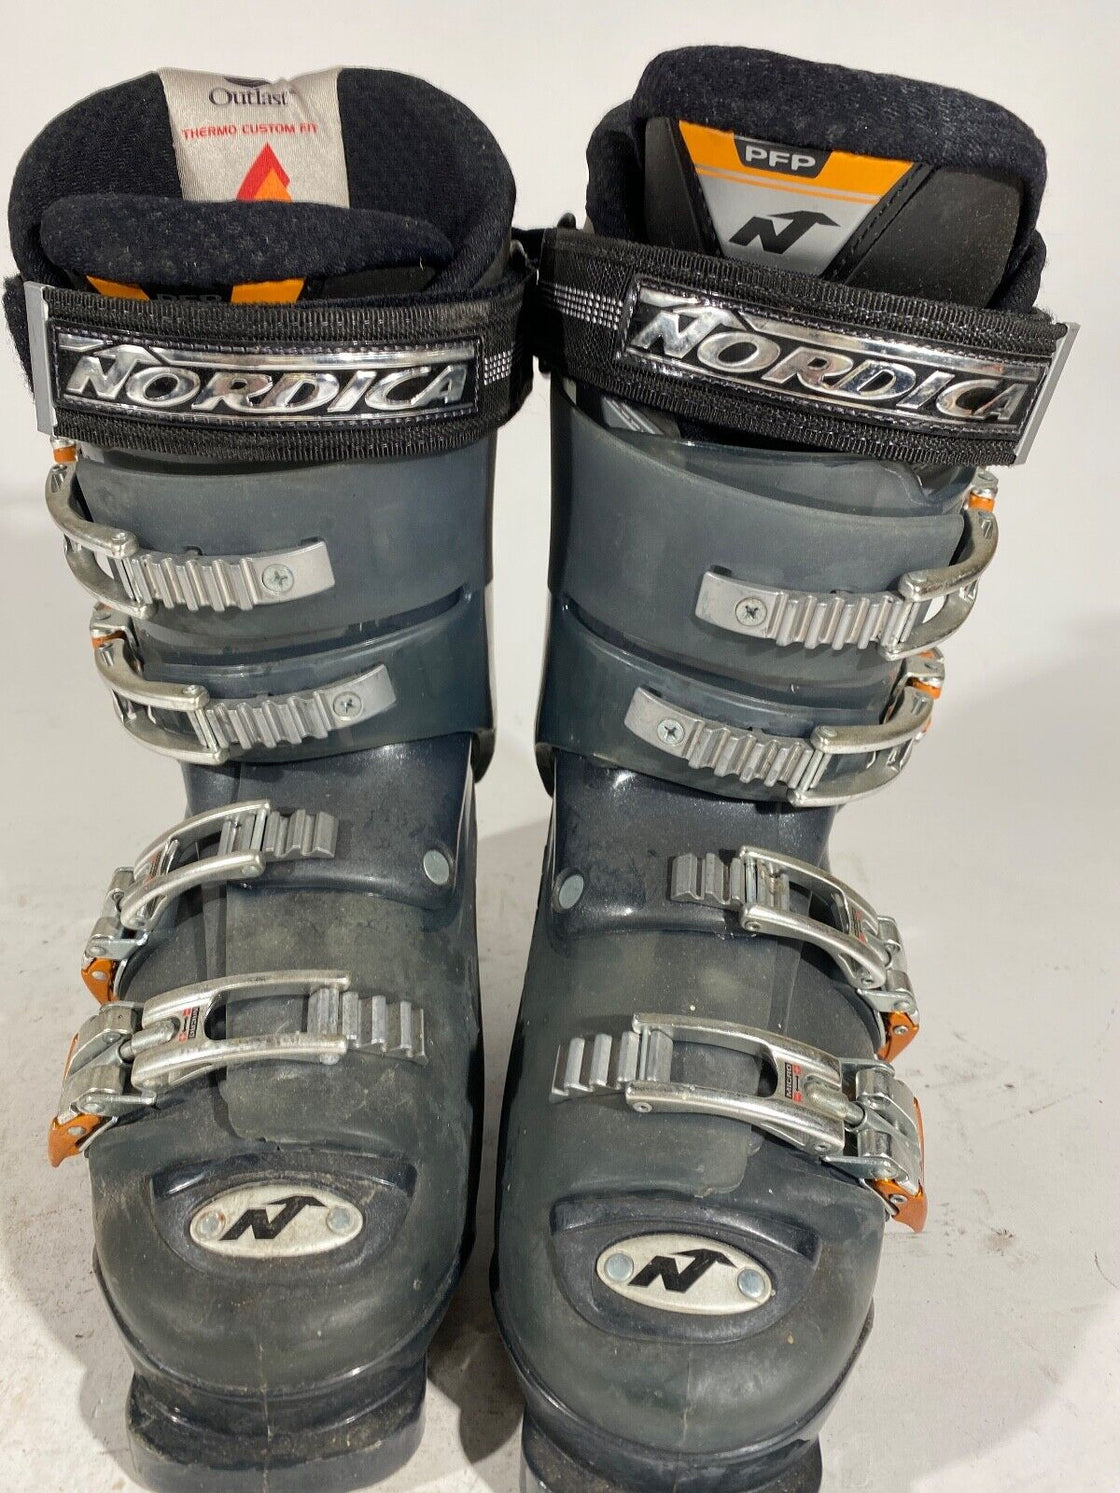 NORDICA Alpine Ski Boots Downhill Size Mondo 253 mm Outer Sole 295 mm